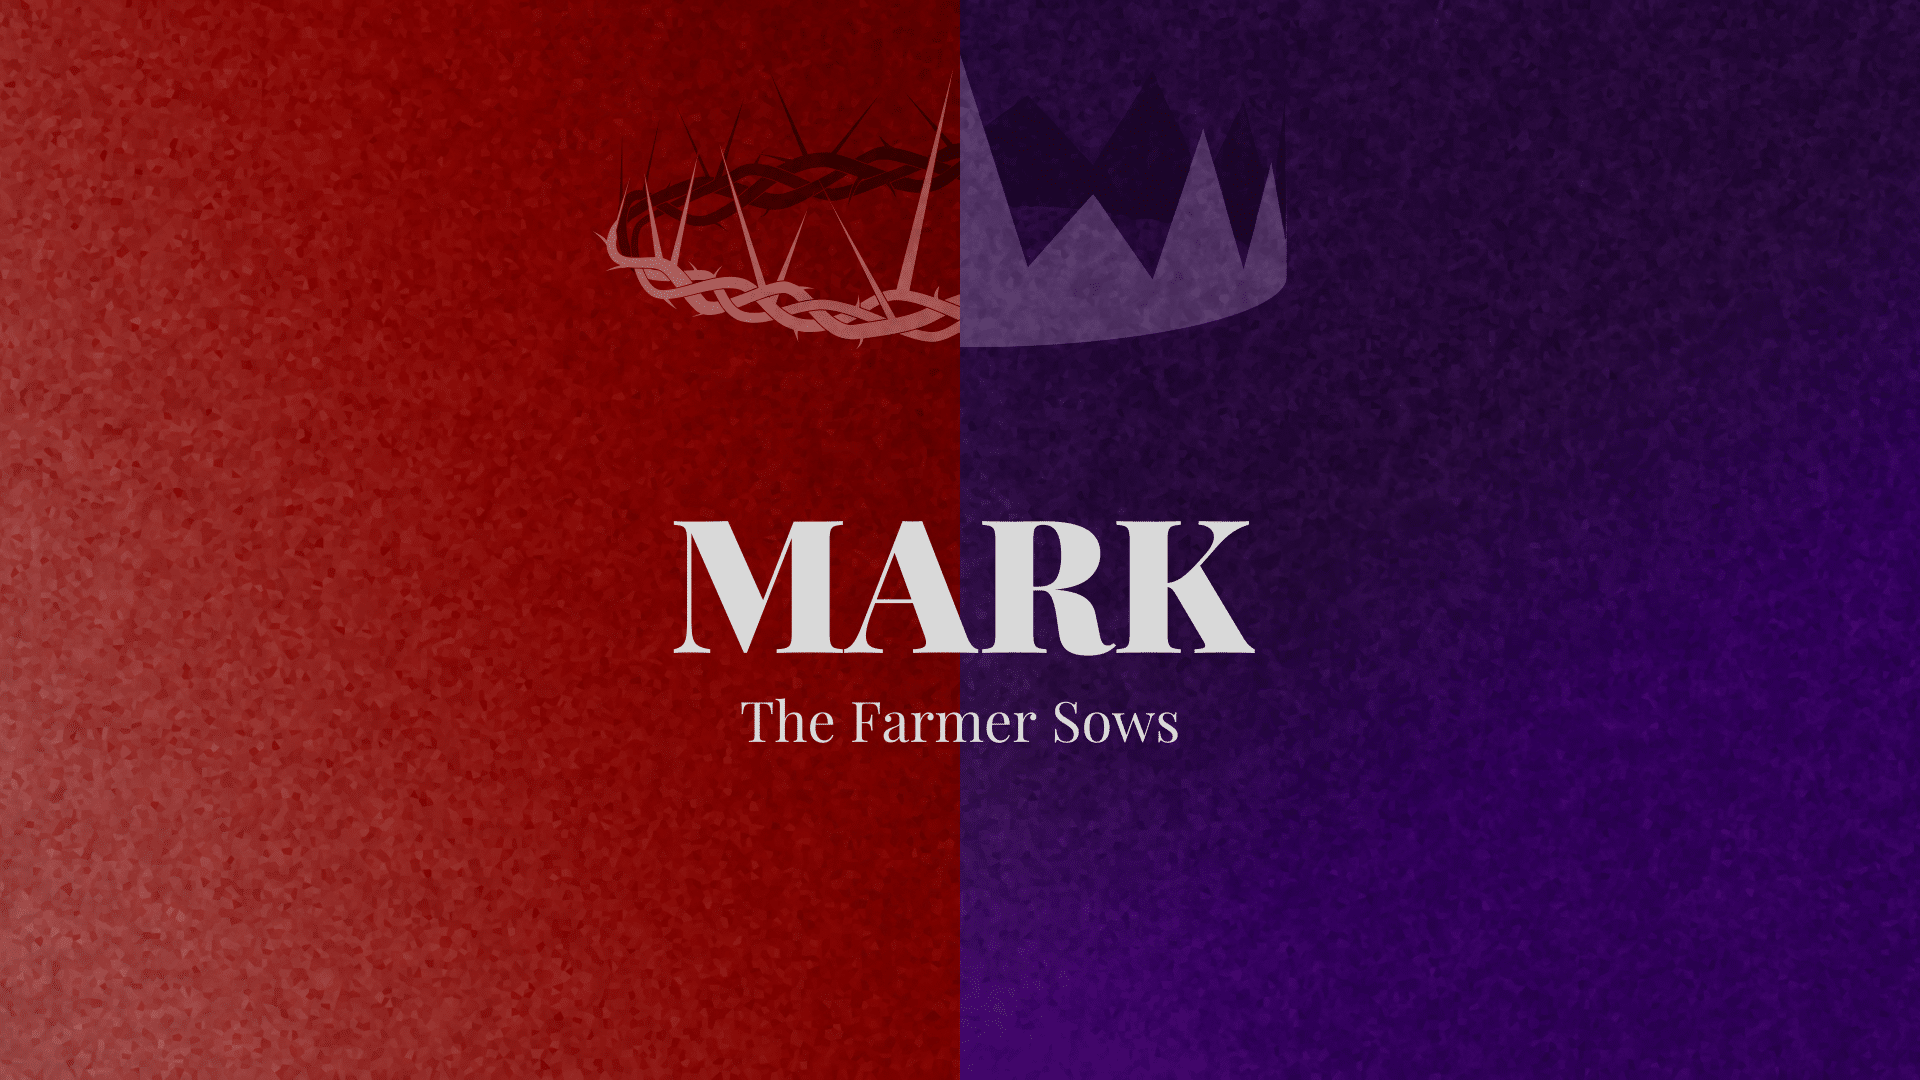 Mark: The Farmer Sows